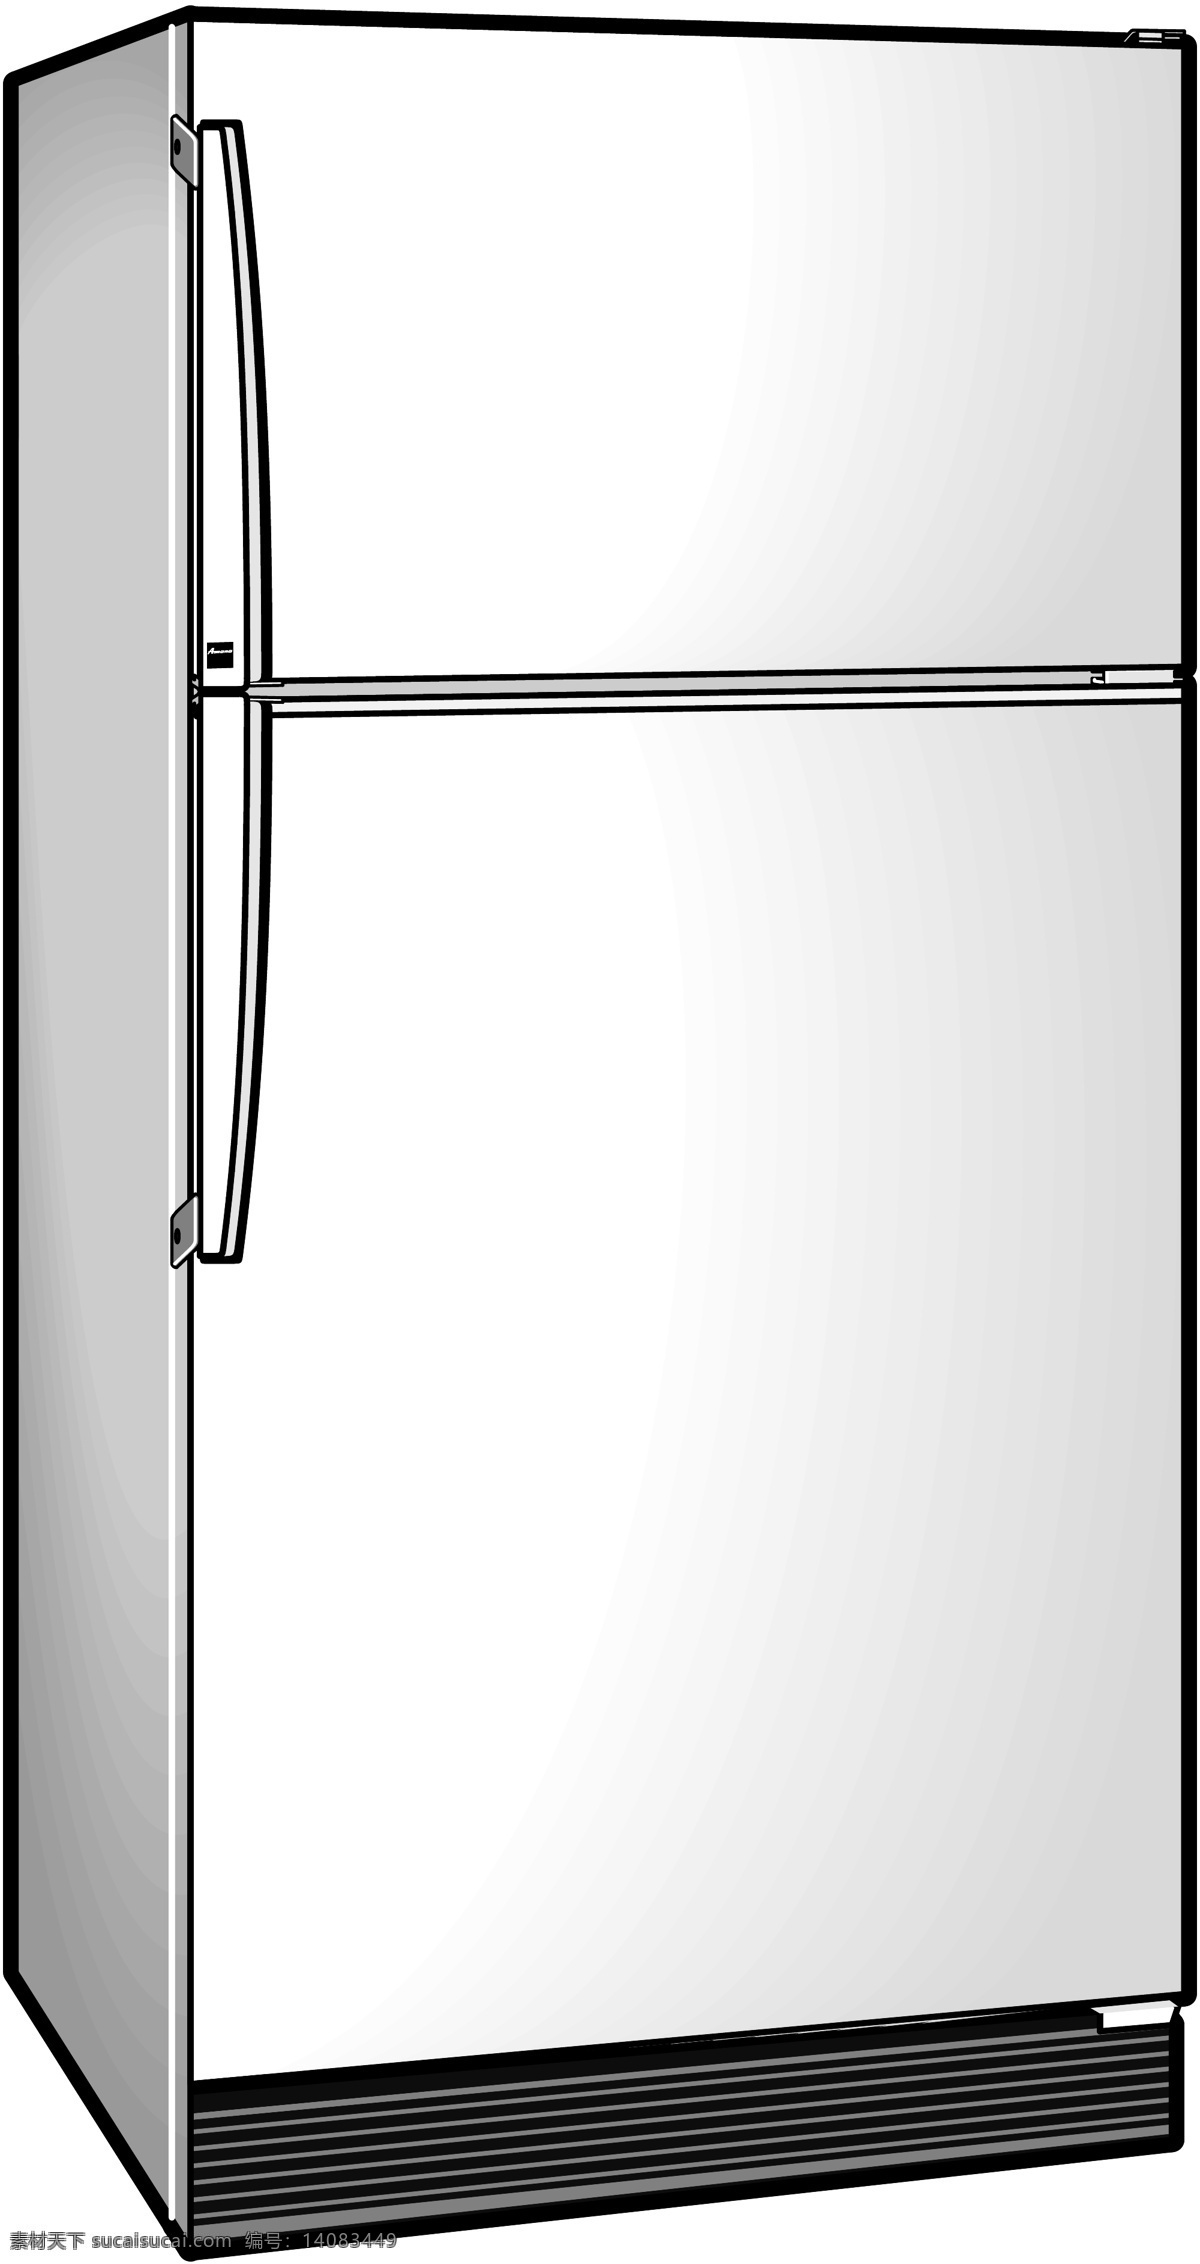 冰柜 冰箱 冷藏 冷藏柜 厨房用品 生活用品 家电 电器 卡通物品 分层